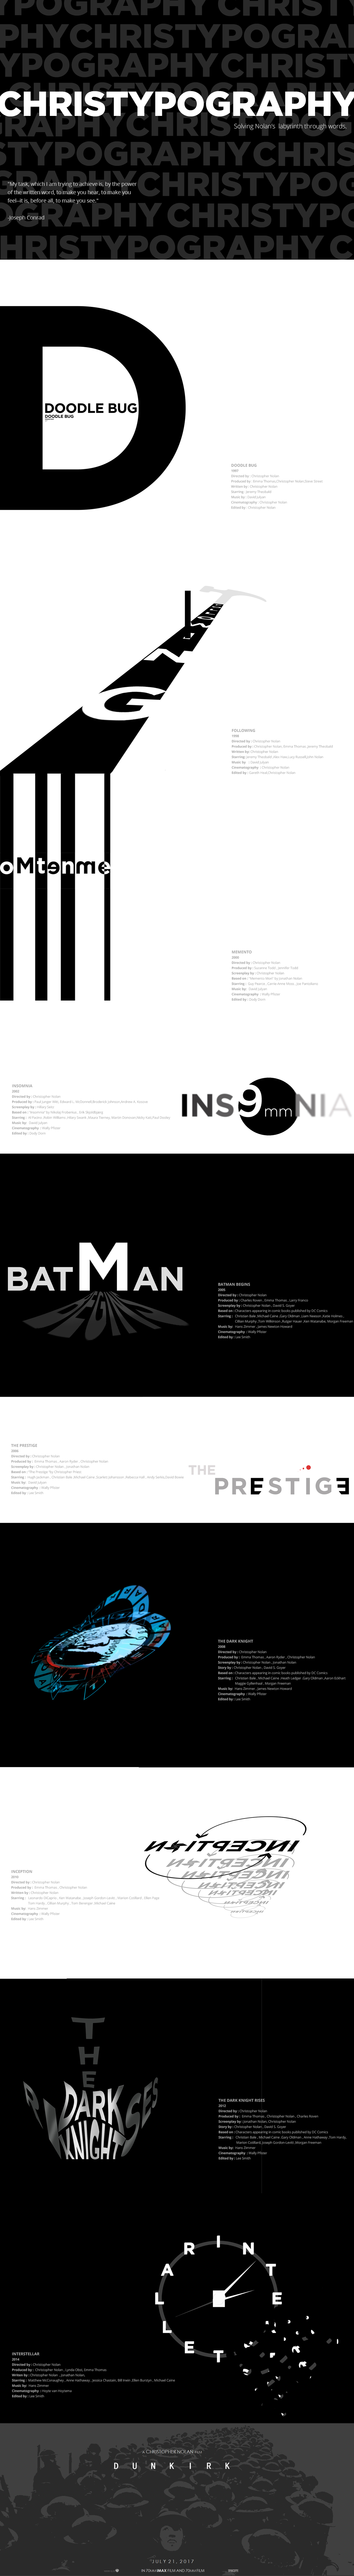 christopher nolan batman dark knight inception creative poster typography   word illustration interstellar Movies black & white